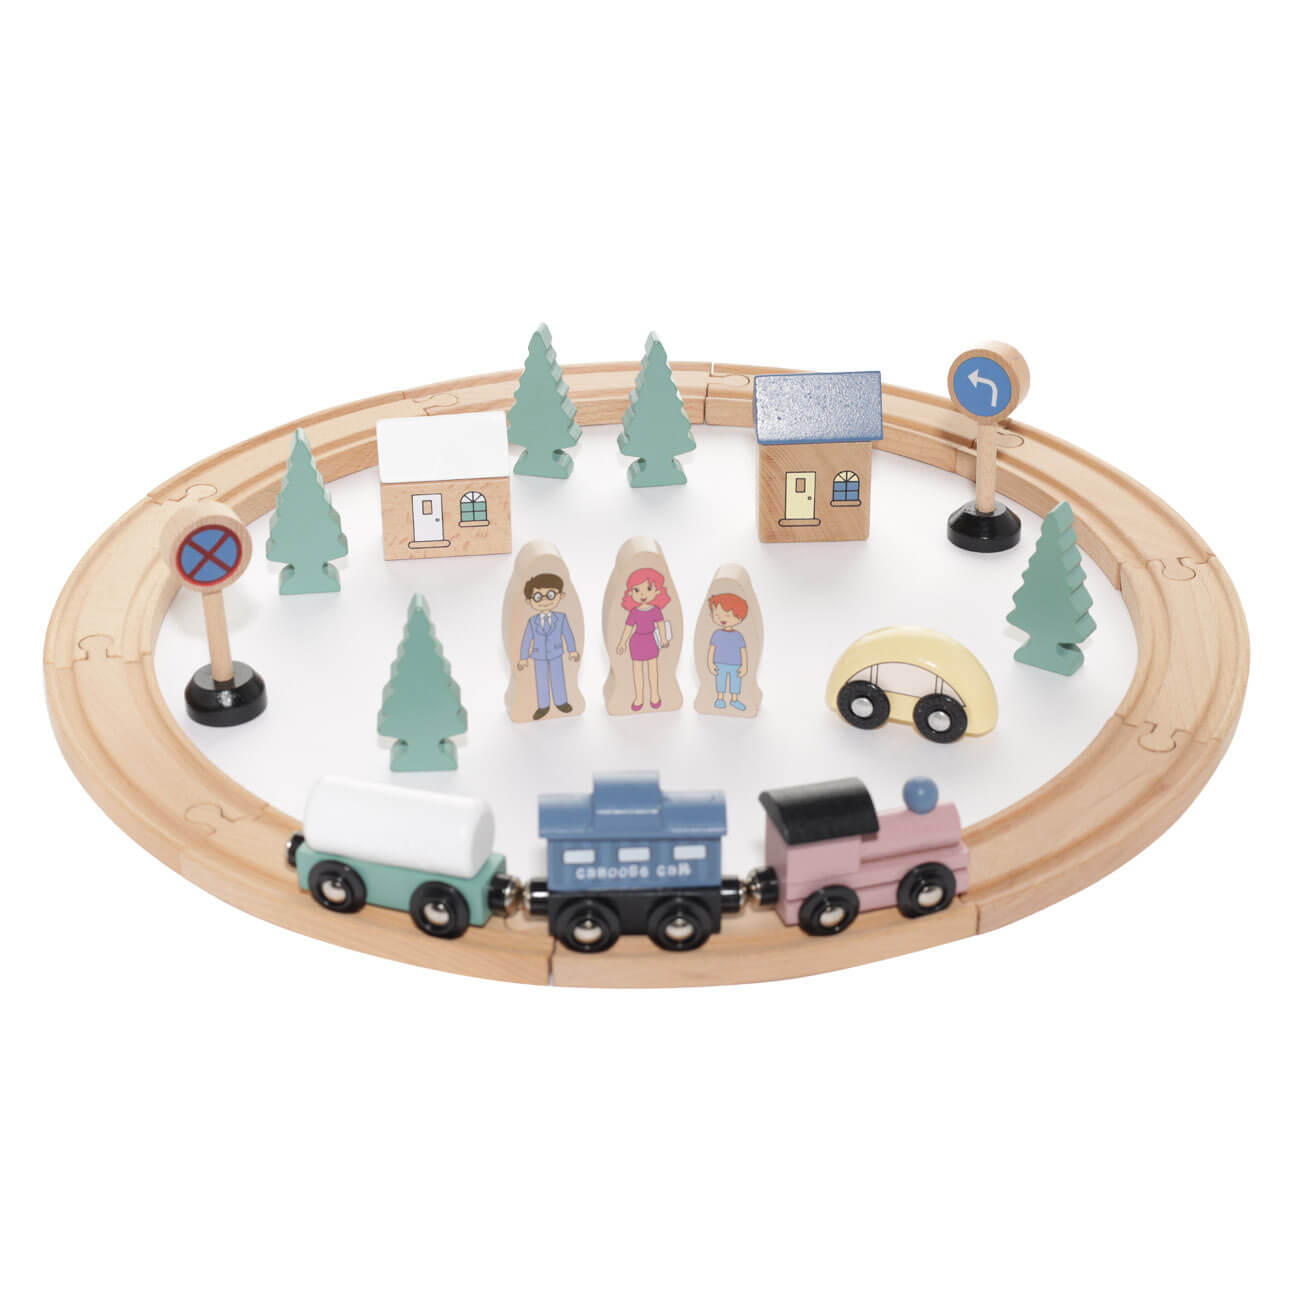 Железная дорога игрушечная, 28 см, дерево, Город, Game железная дорога вверх по радуге в пакете